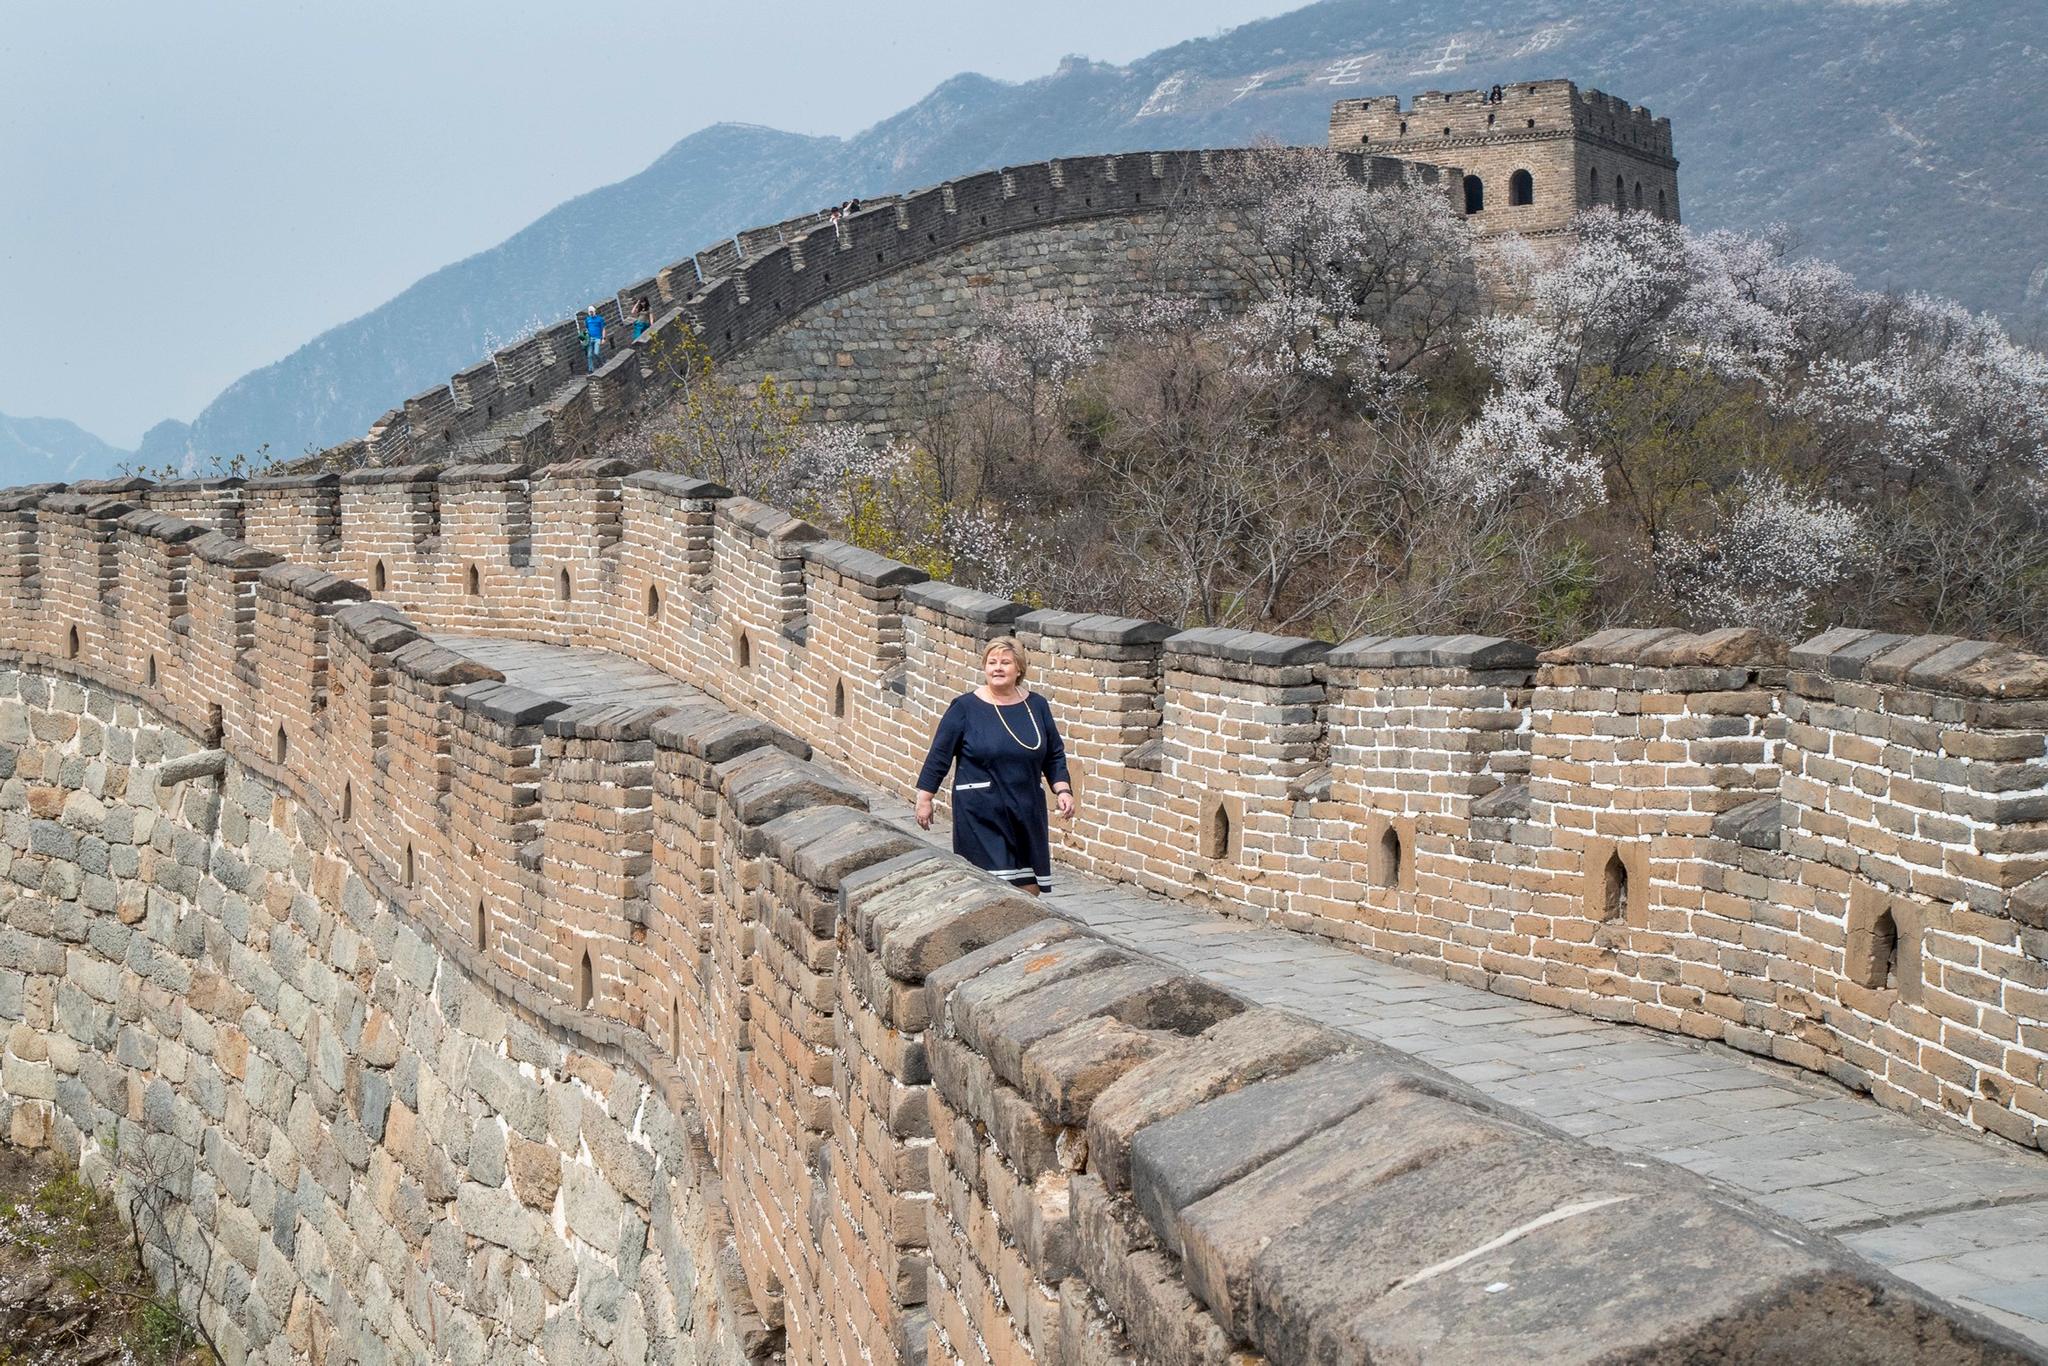  Erna Solberg på den store kinesiske mur i Mutianyu utenfor Beijing.